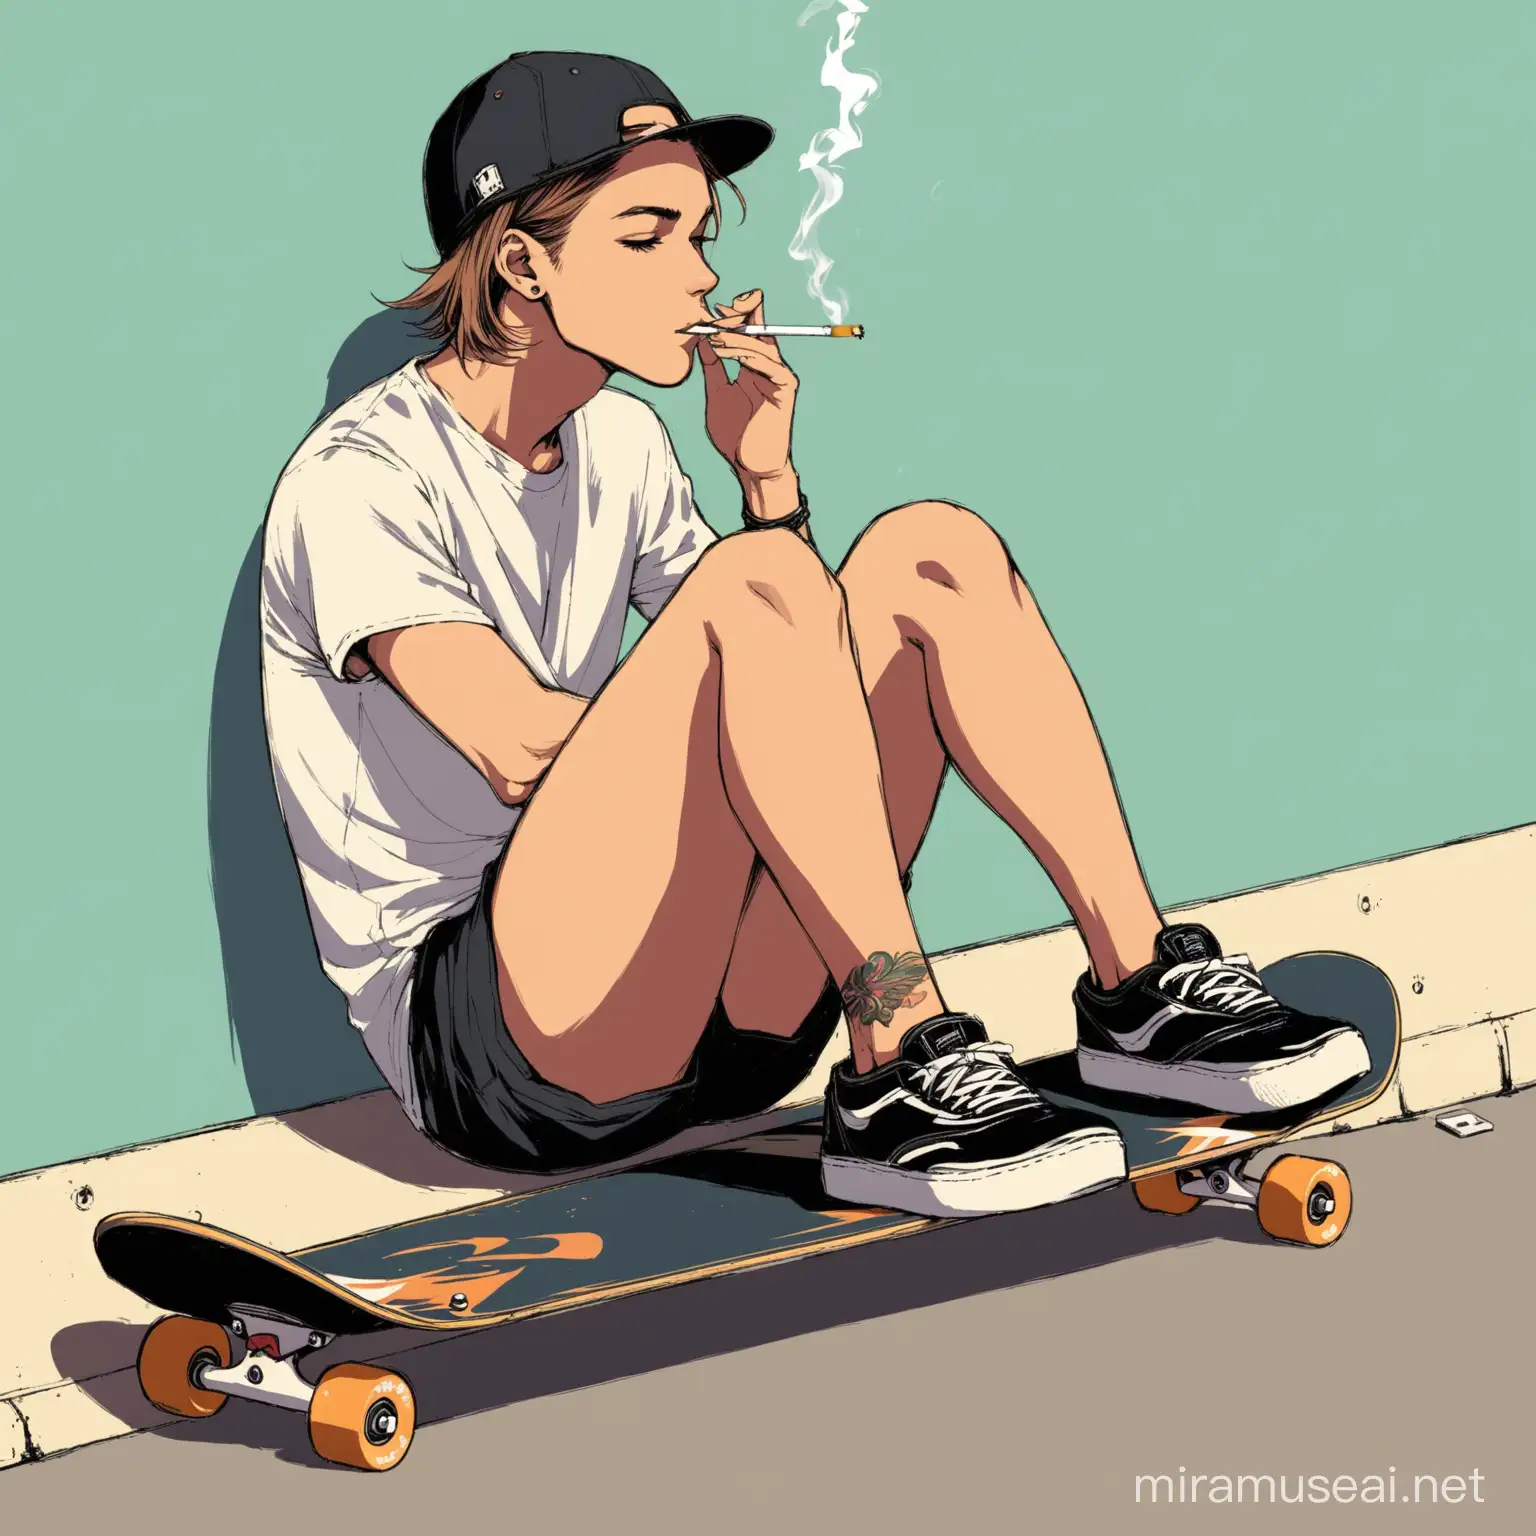 yo sentado en una patineta fumando un cigarro